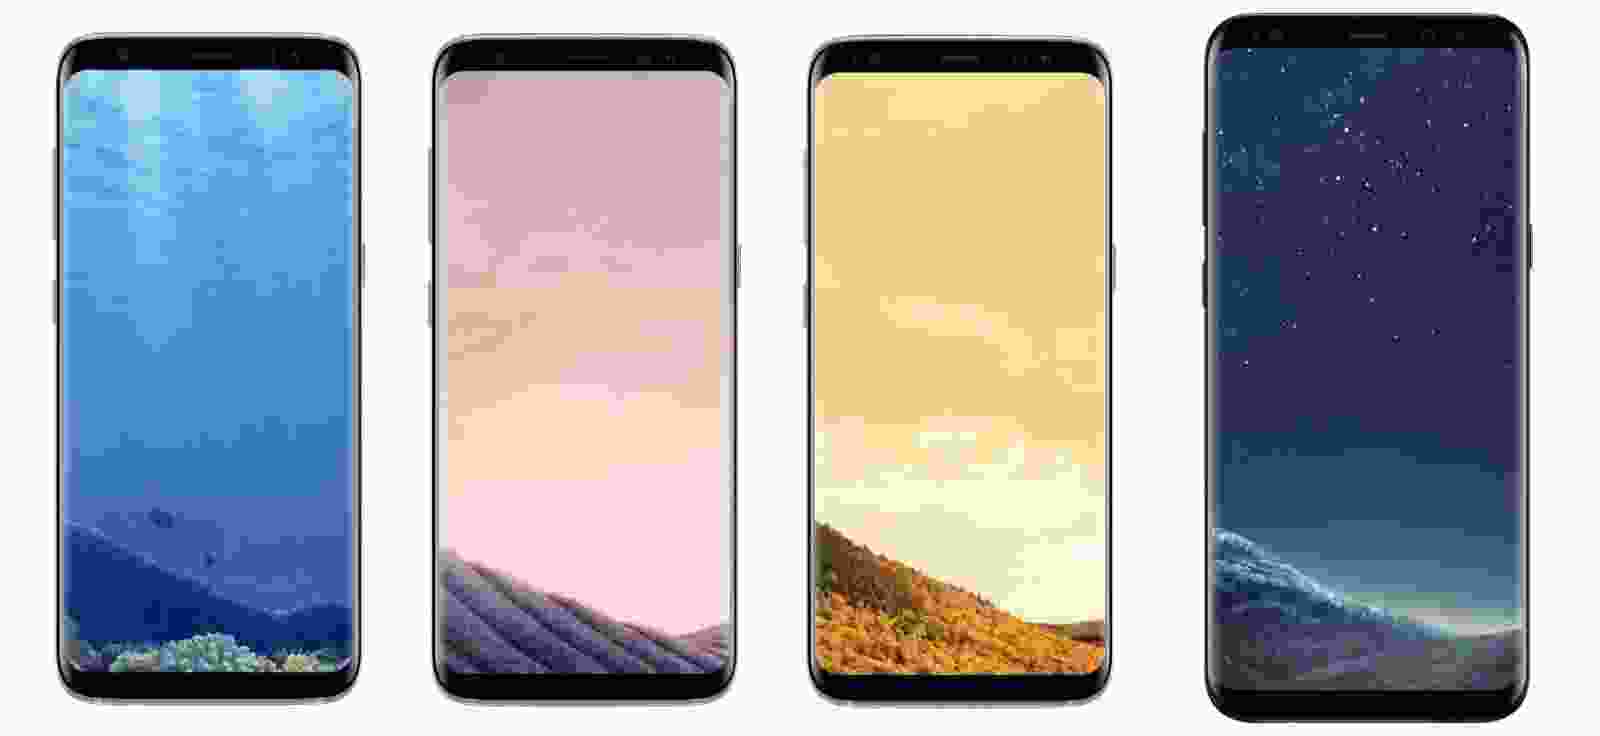 Galaxy S8: Thiết kế sang trọng, cấu hình mạnh mẽ và màn hình vô cực của Galaxy S8 mang đến trải nghiệm tuyệt vời cho người dùng. Hình nền Galaxy S8 đầy sáng tạo và tươi sáng sẽ làm cho màn hình điện thoại của bạn nổi bật khỏi những chiếc điện thoại thông thường.